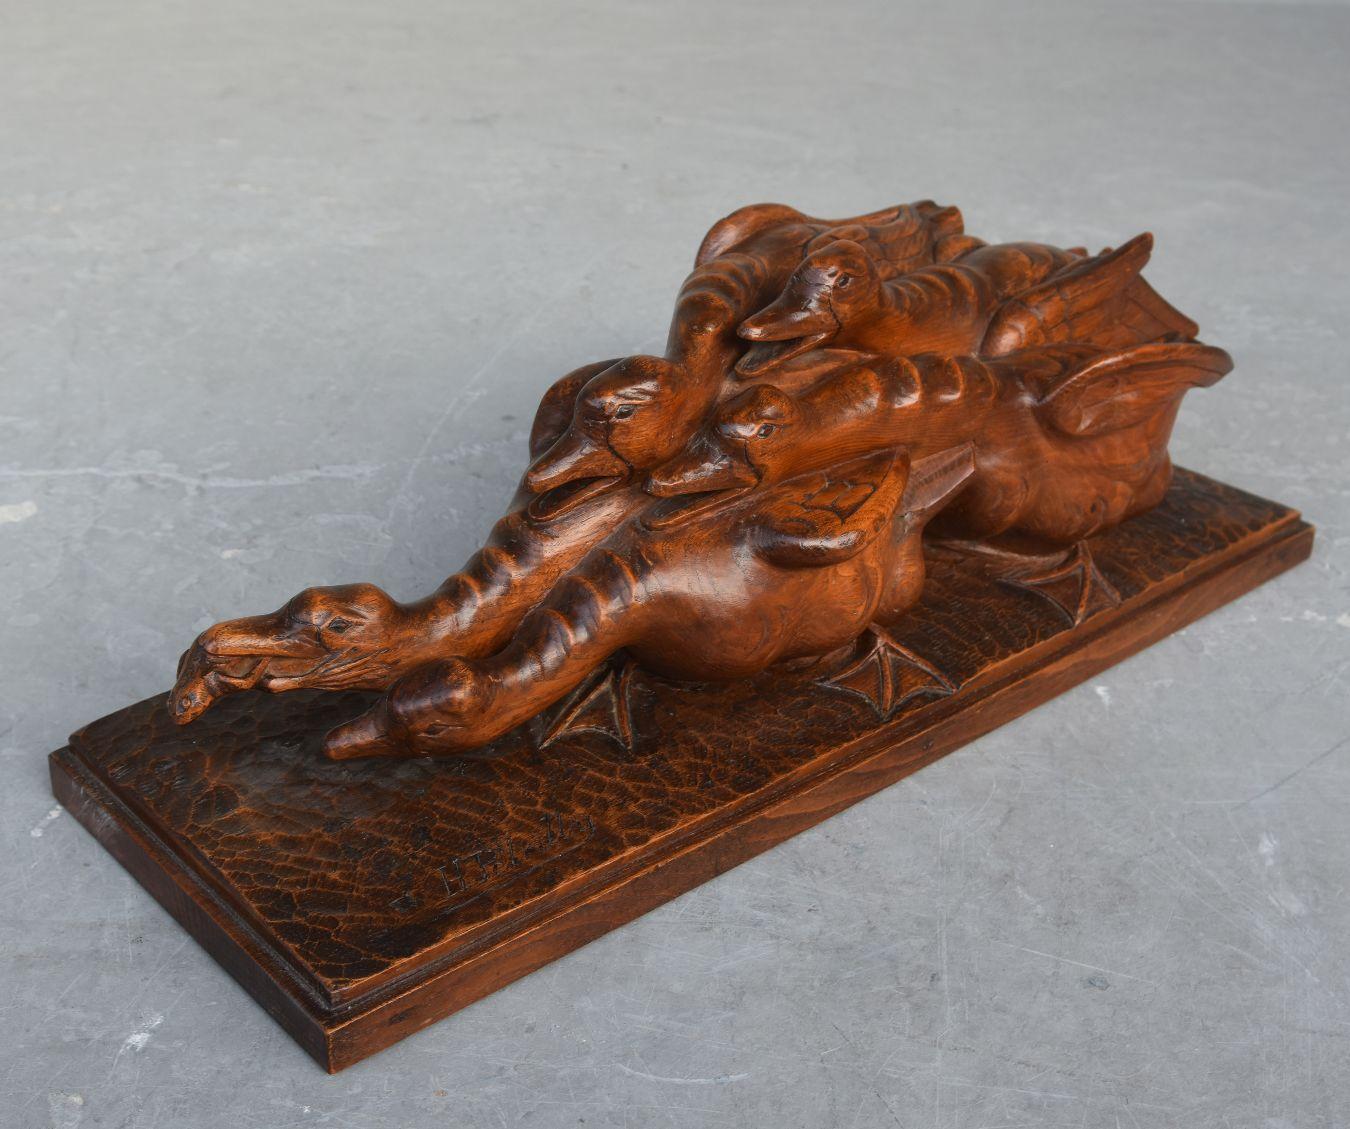 sculpture en bois des années 1930 représentant des oies se disputant une grenouille par H. Petrilly.